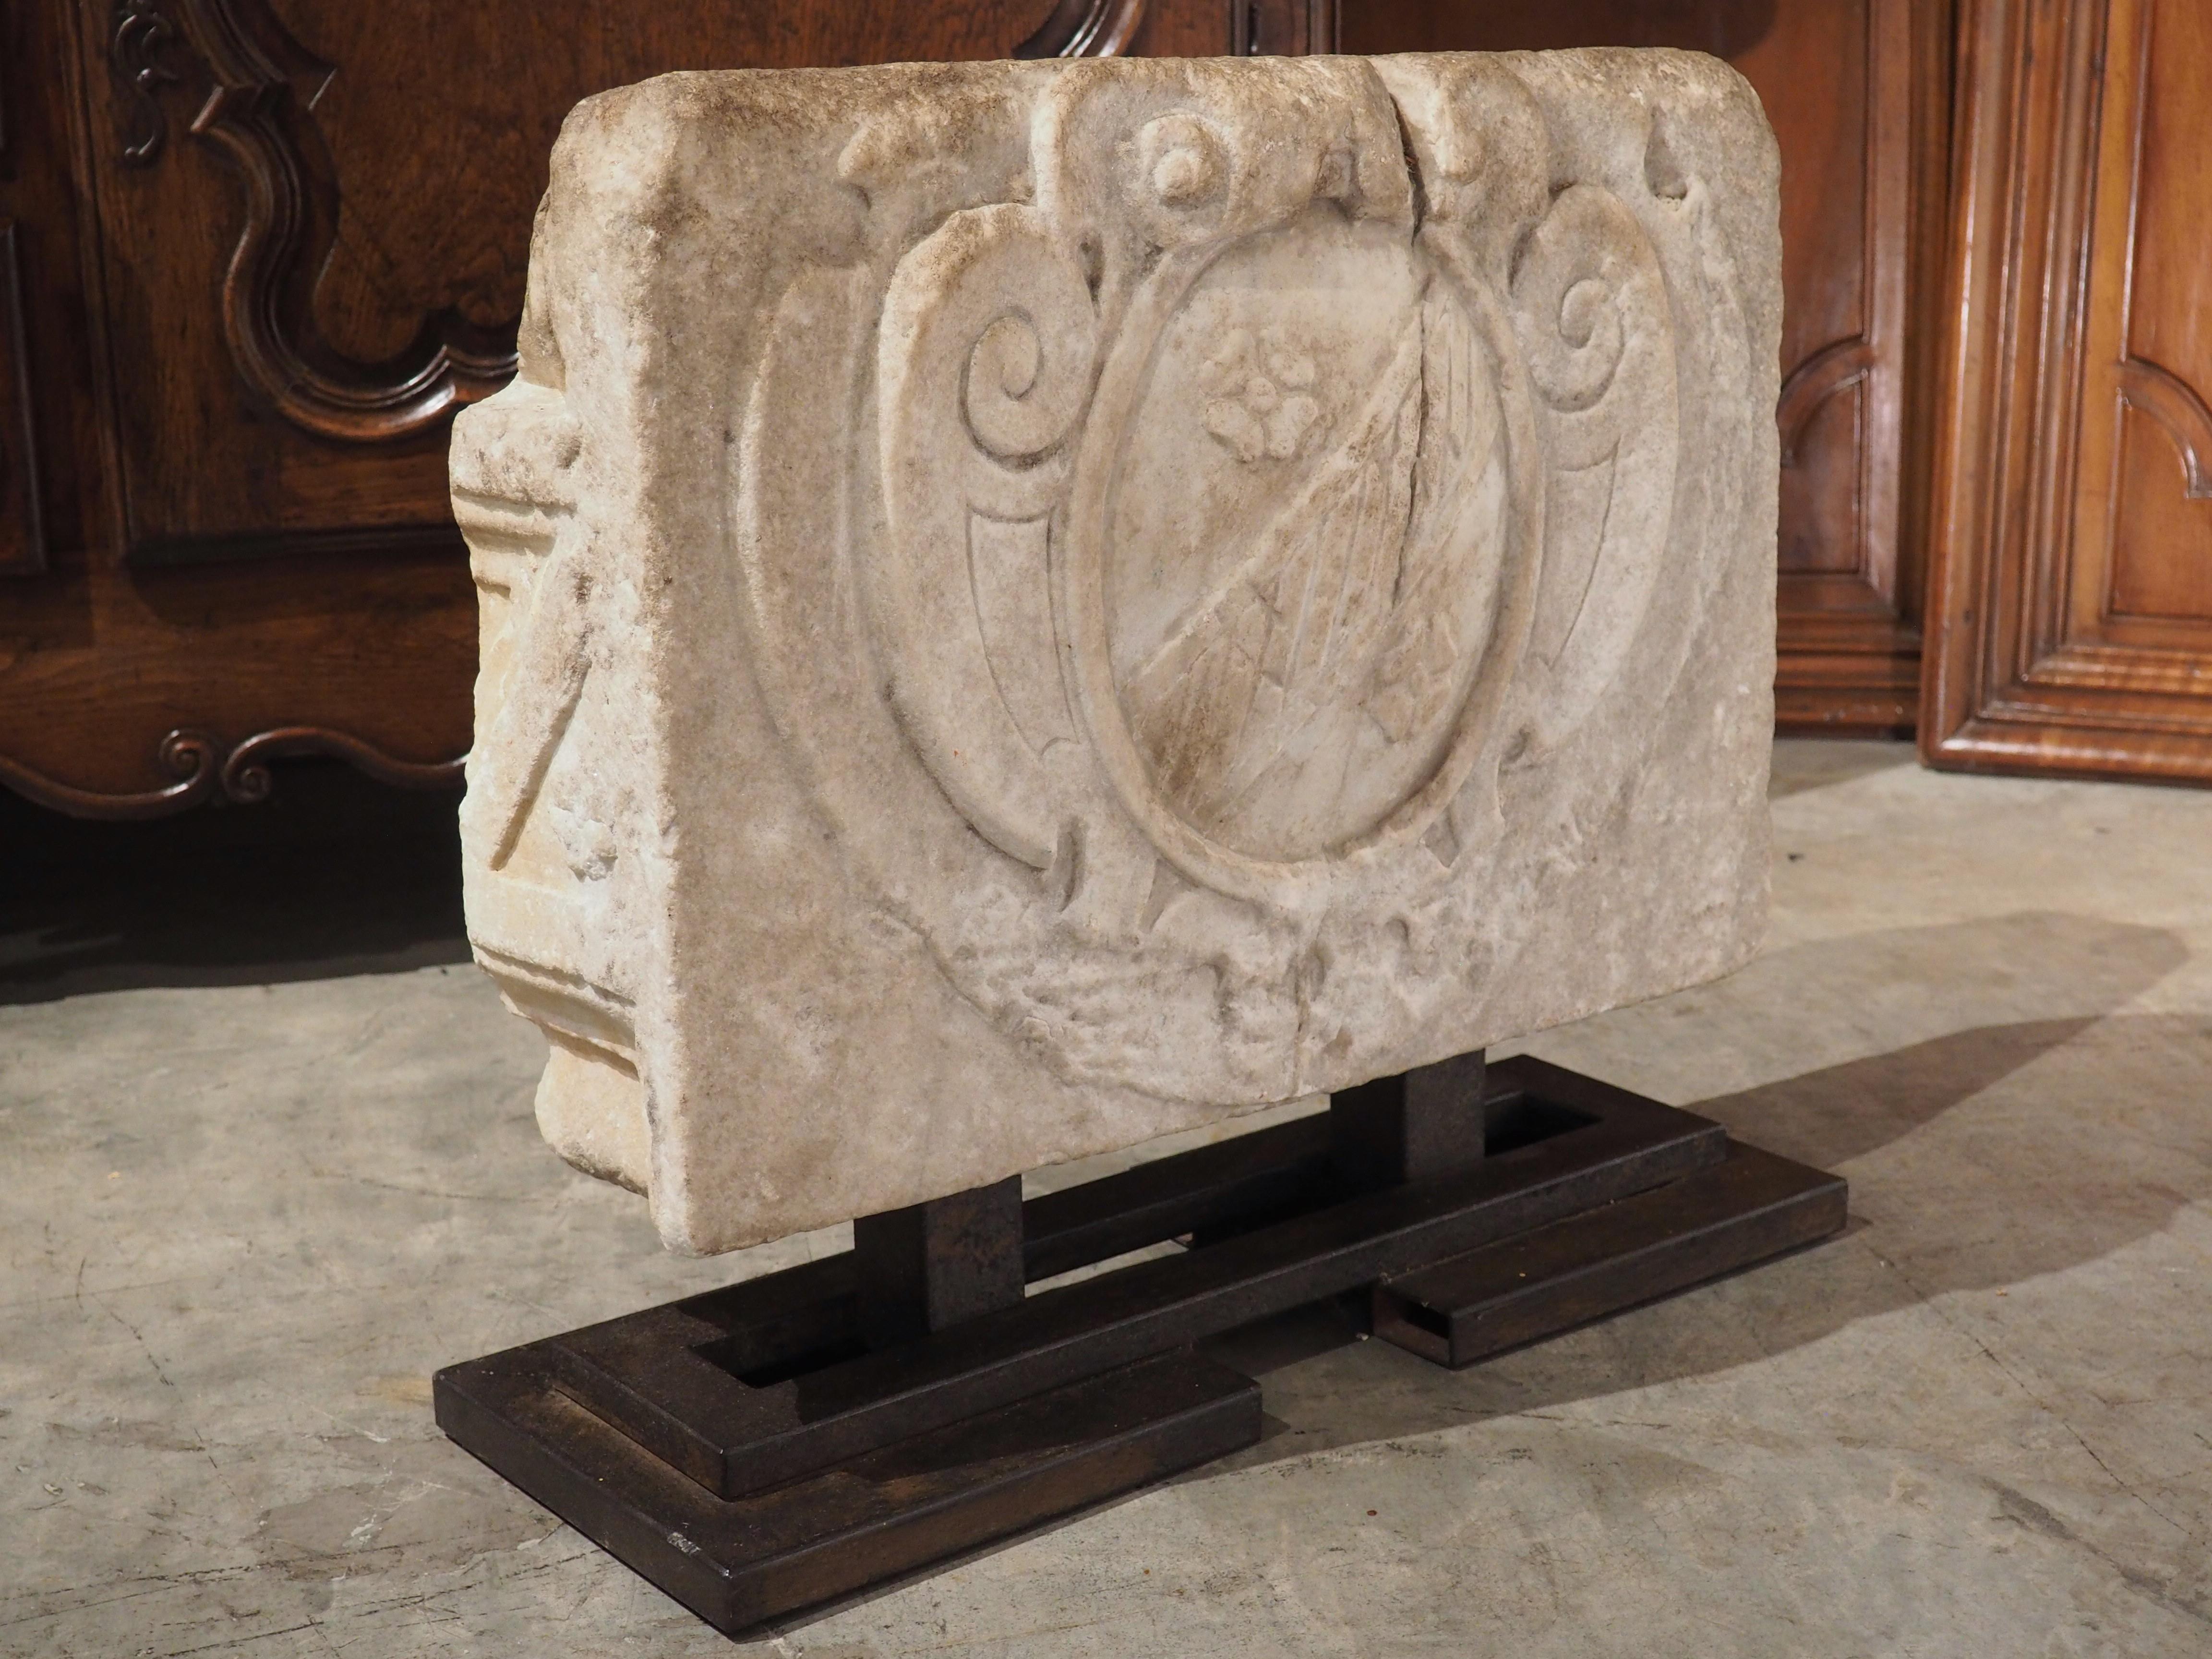 Die Schnitzereien dieser Stemma-Kartusche aus Marmor stammen aus der Zeit um 1500. Der in der Toskana, Italien, handgeschnitzte Marmor wurde im letzten Jahrhundert auf einen geometrisch geformten Eisenständer montiert.

Stemmas lassen sich bis ins